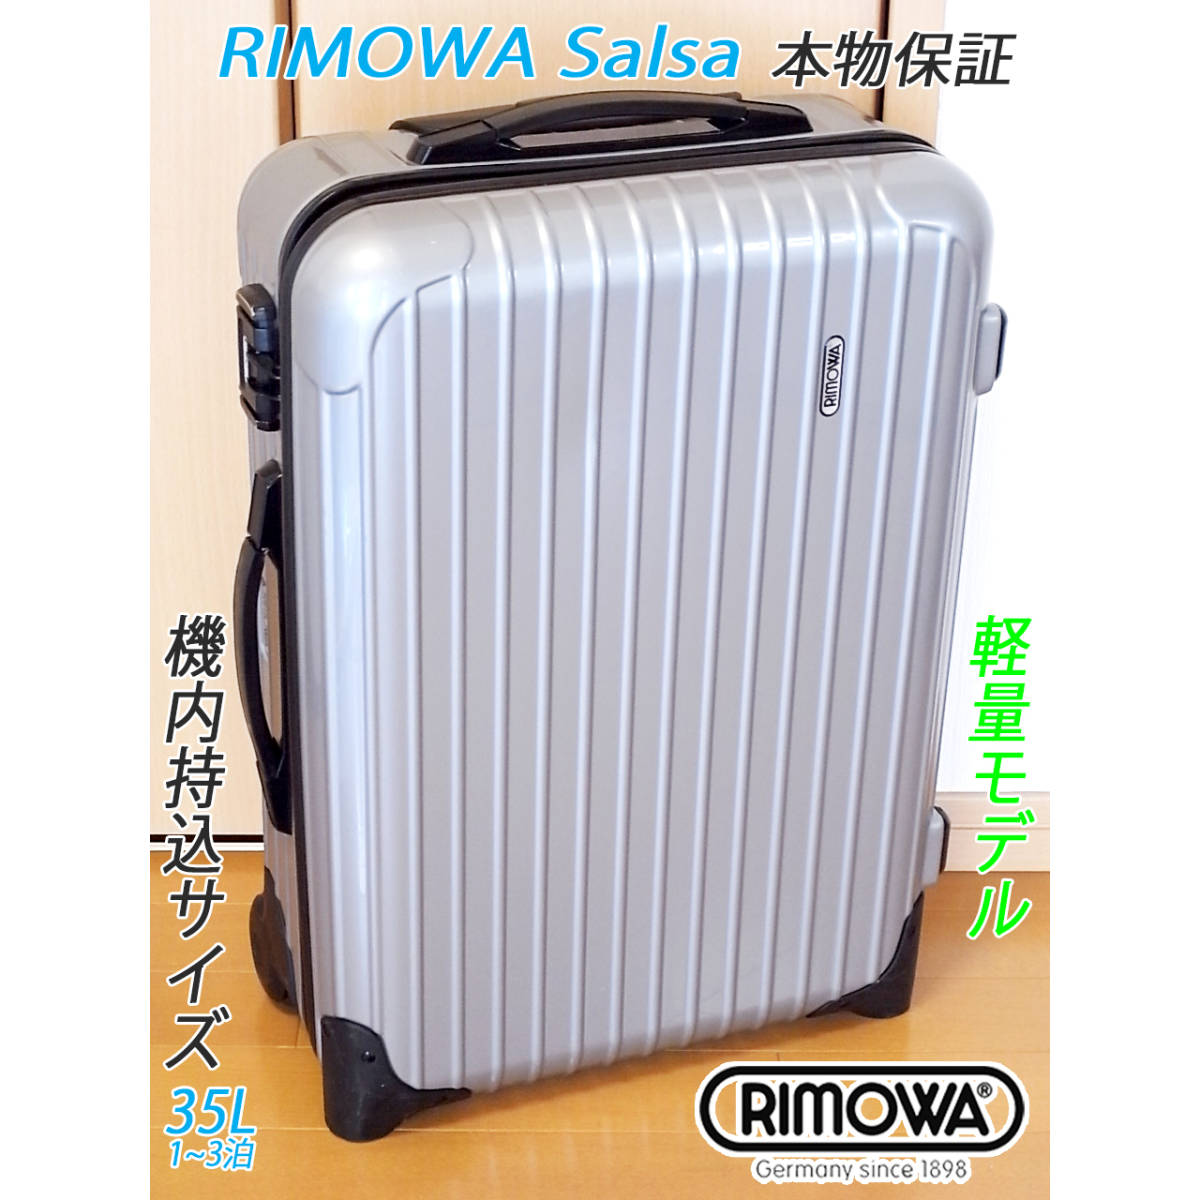 ◇本物! RIMOWA Salsa/リモワ サルサ 35L【機内持込可】超軽量